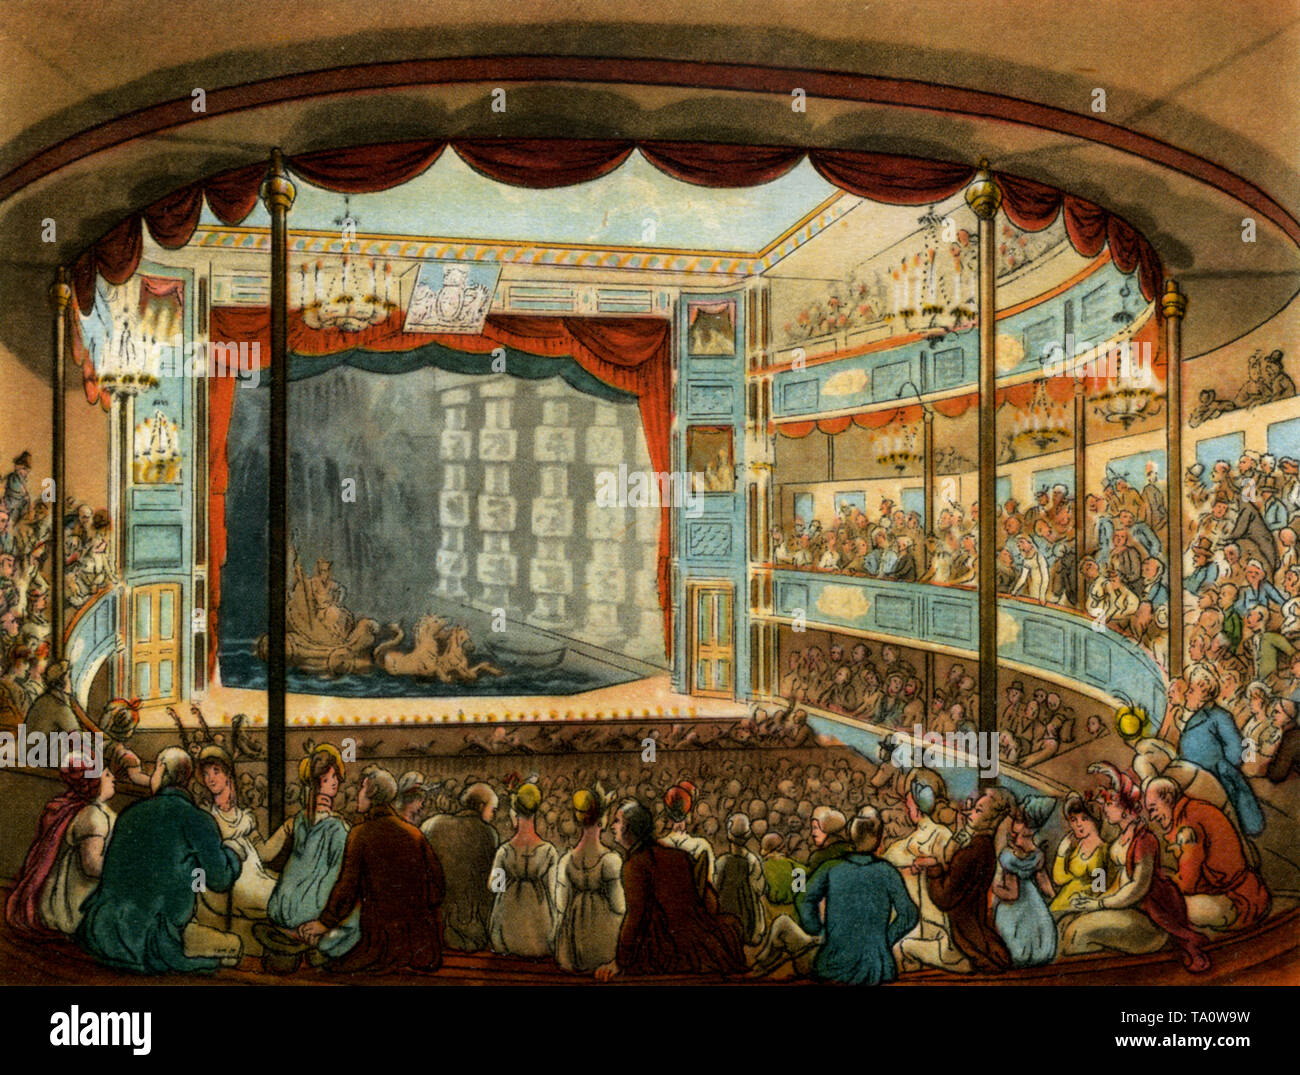 Sadler's Wells Theatre, c1808-1810. Una stampa dal microcosmo di Londra, di William Henry Pyne (1770-1843). Illustrato da Thomas Rowlandson (1756-1827) e Auguste Charles Pugin (1762-1832). Il magnifico auditorium dell'ex Sadler's Wells Theatre. Ora famoso come luogo di balletto, lo vediamo utilizzato qui come teatro acquatico. Con la costruzione di un grande serbatoio, allagato dal vicino New River, un Teatro Acquatico è stato utilizzato per palcoscenico stravaganti melodramas navali. Foto Stock